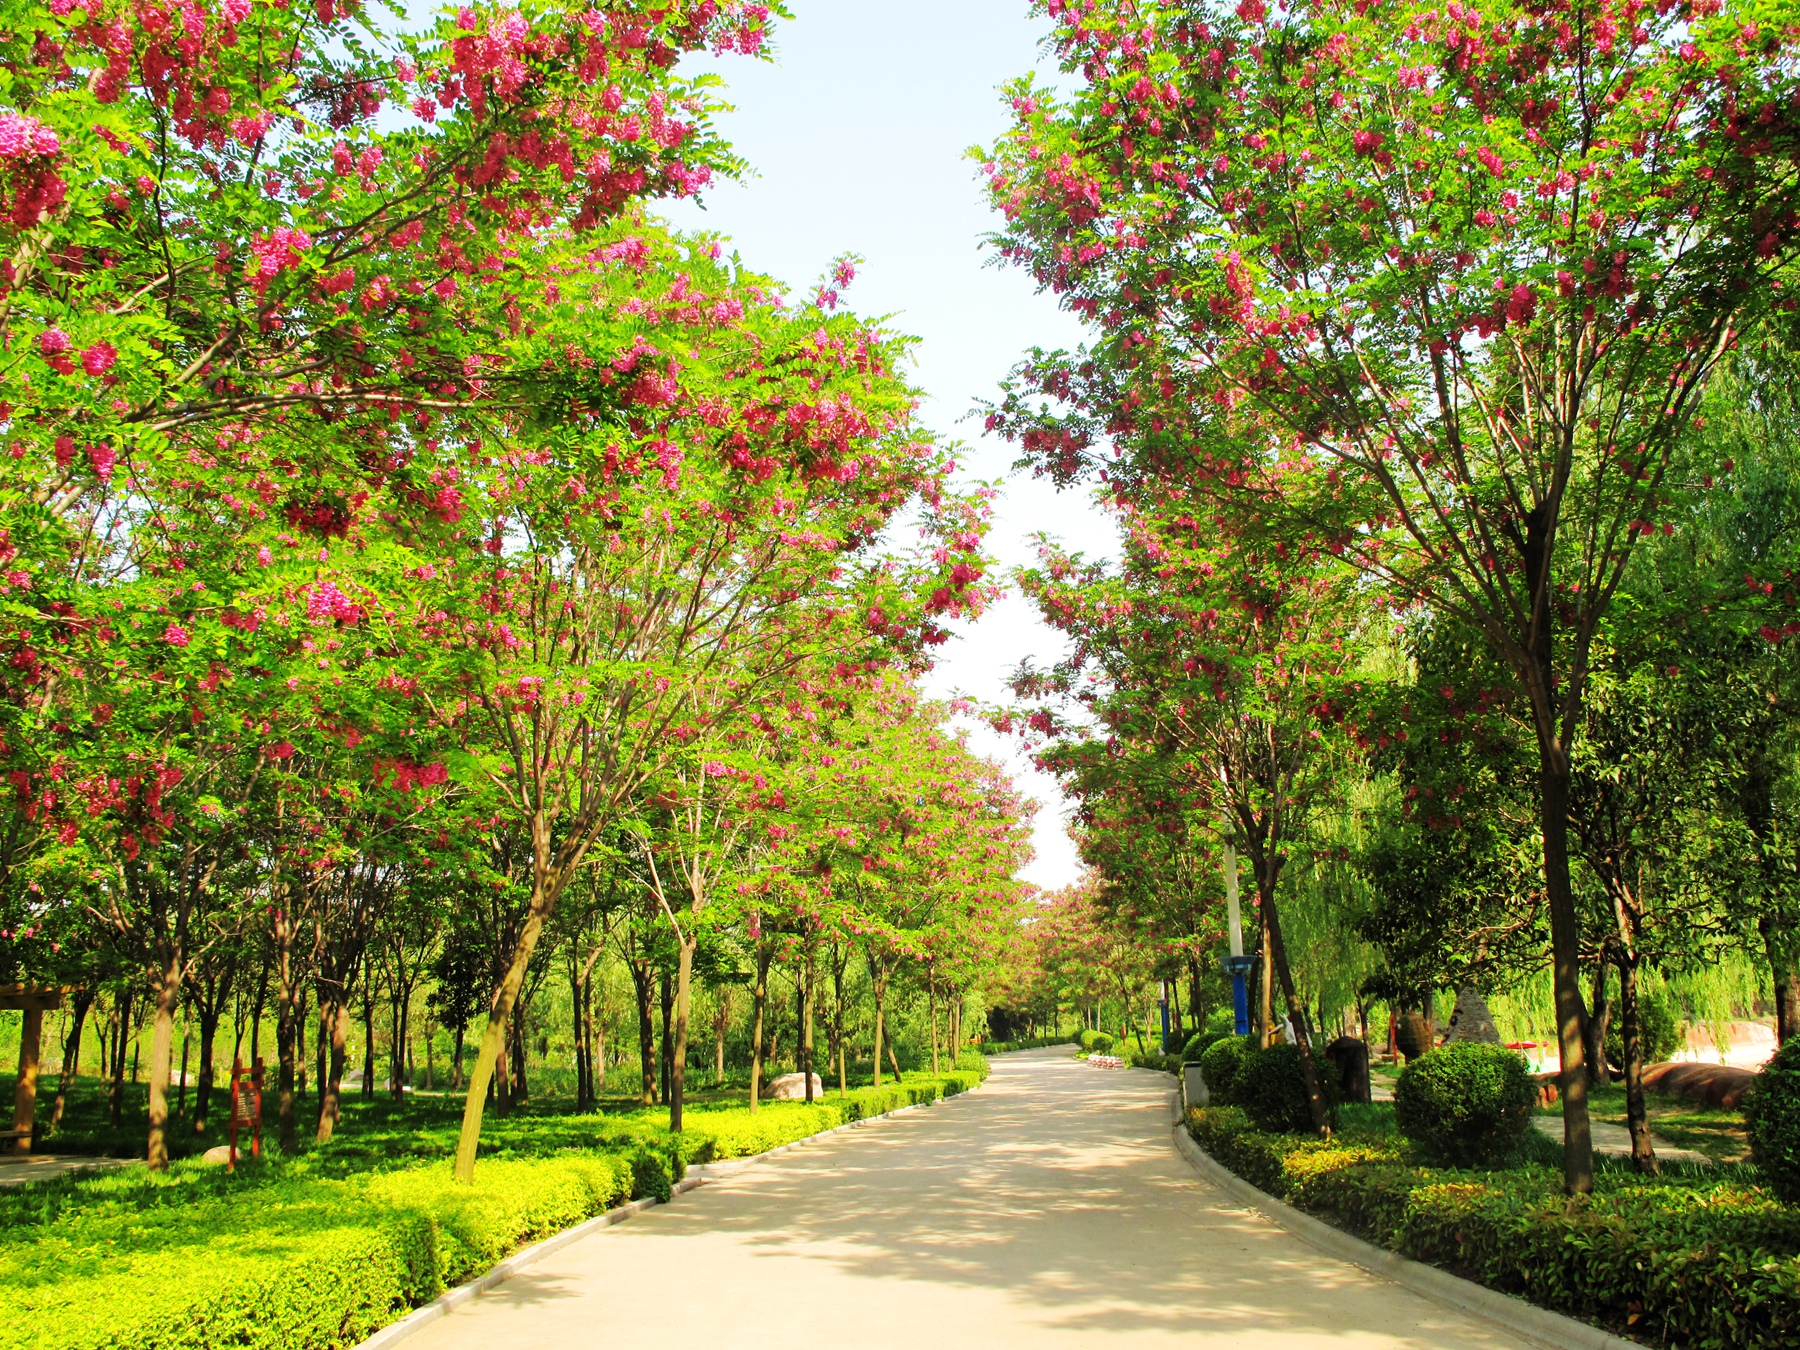 鄢陵国家花木博览园